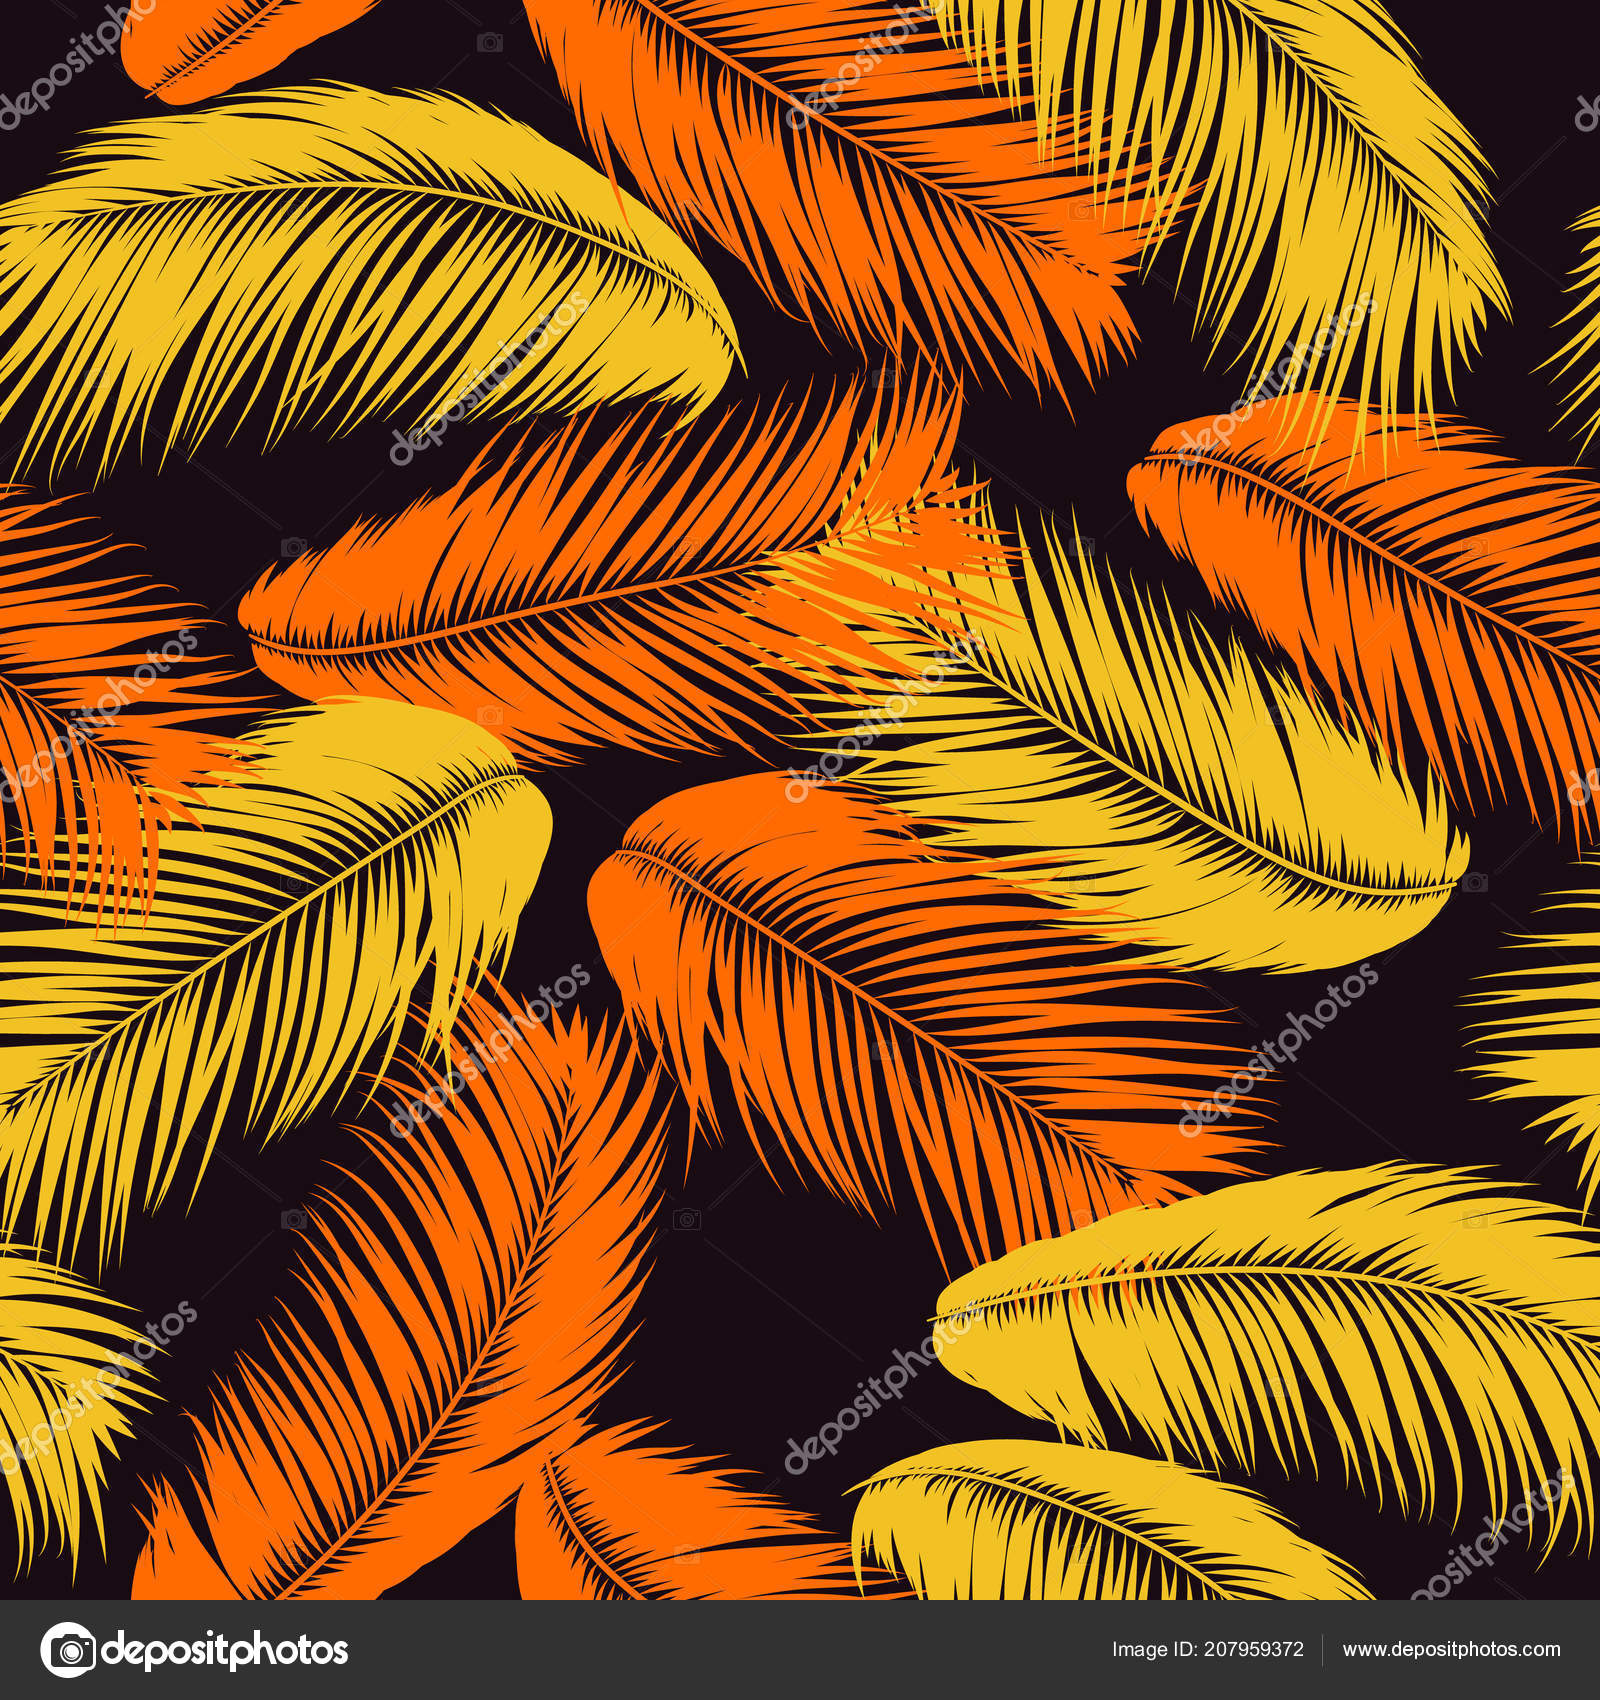 羽のシームレスなパターン 熱帯の背景 パステル カラー デザインでジャングルの葉 手のひらで抽象的なエキゾチックな壁紙 を残します デザイン 布 ファブリック 繊維のピンクの羽 Eps10 ベクトル ストックベクター C Ingara